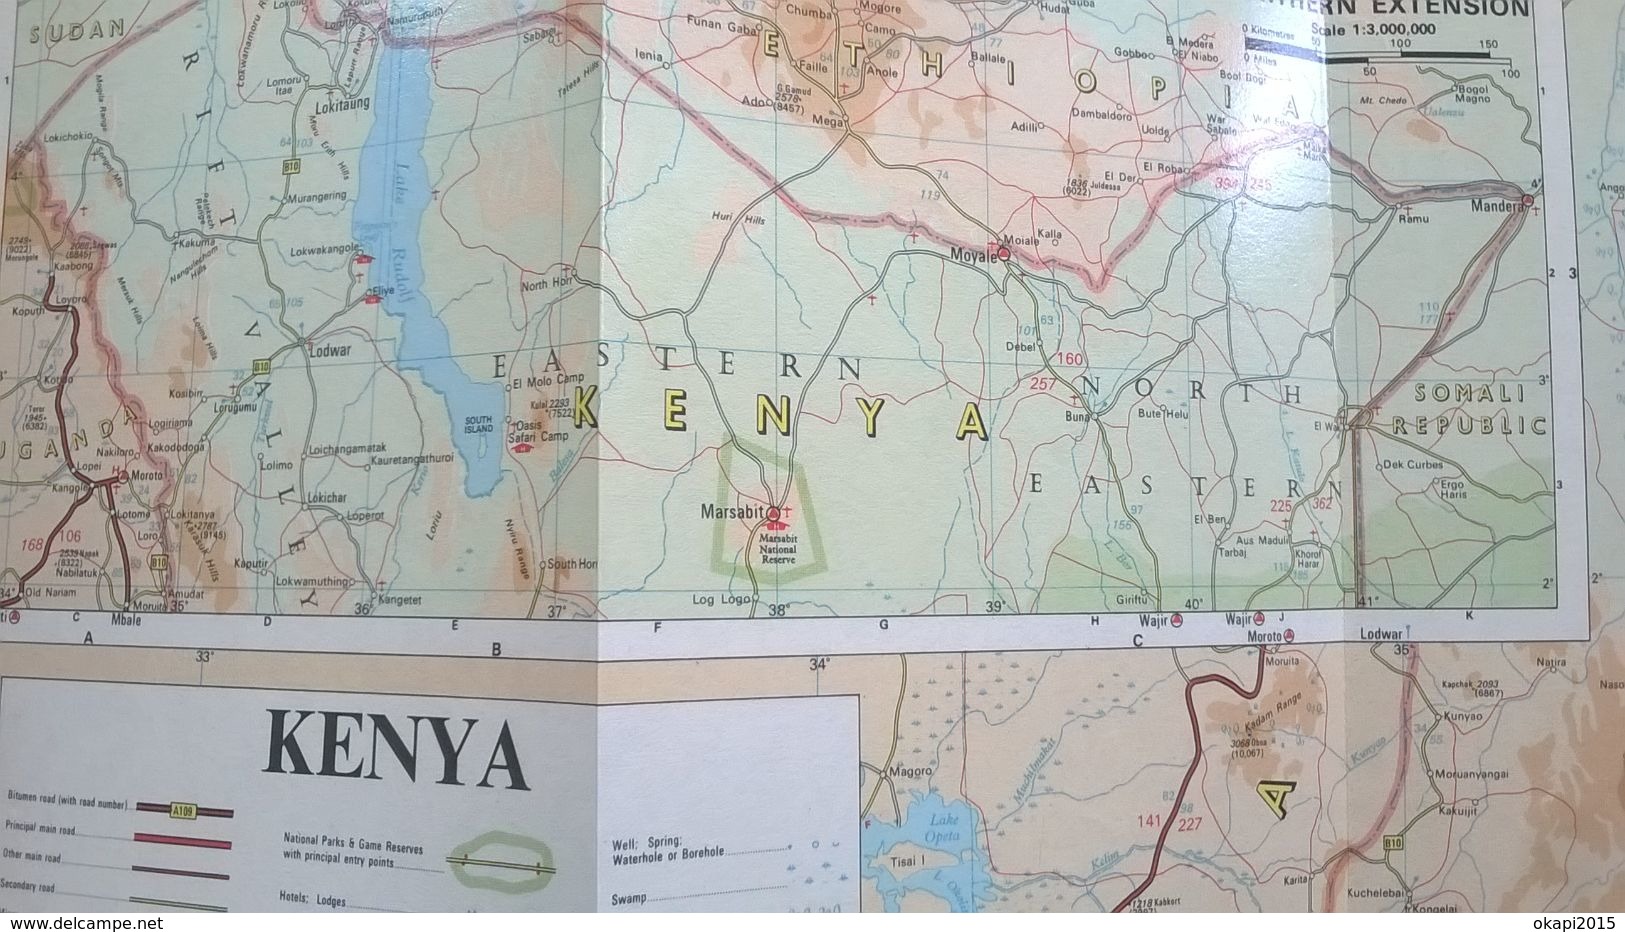 Road map of Kenya - Year 1968 - Vieille carte routière du Kenya - Année 1968. Publicité  Shell.